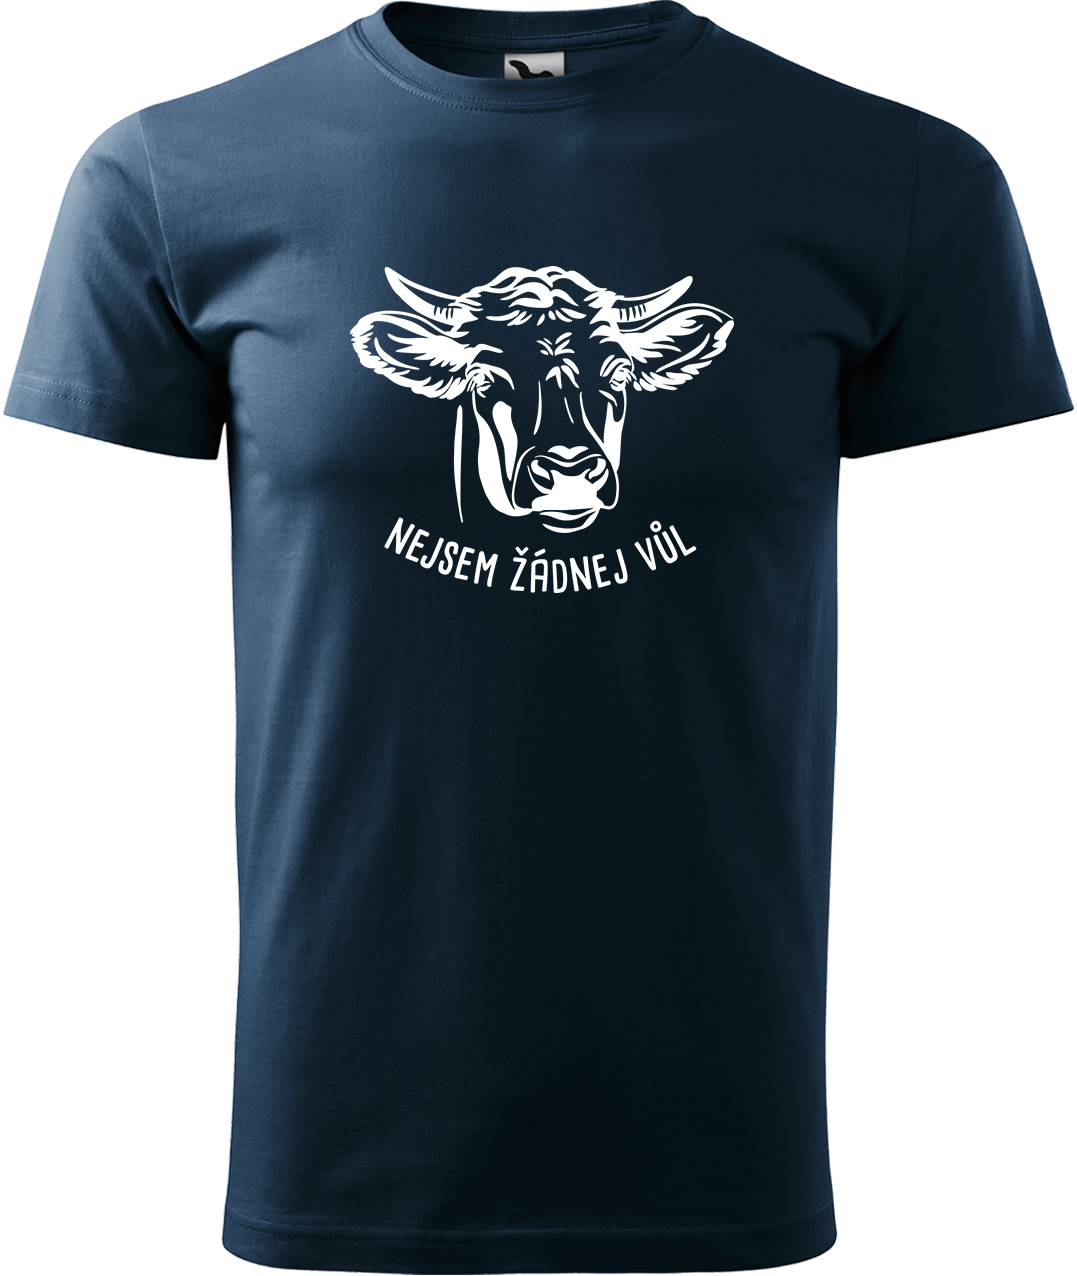 Pánské tričko s krávou - Nejsem žádnej vůl Velikost: XL, Barva: Námořní modrá (02), Střih: pánský